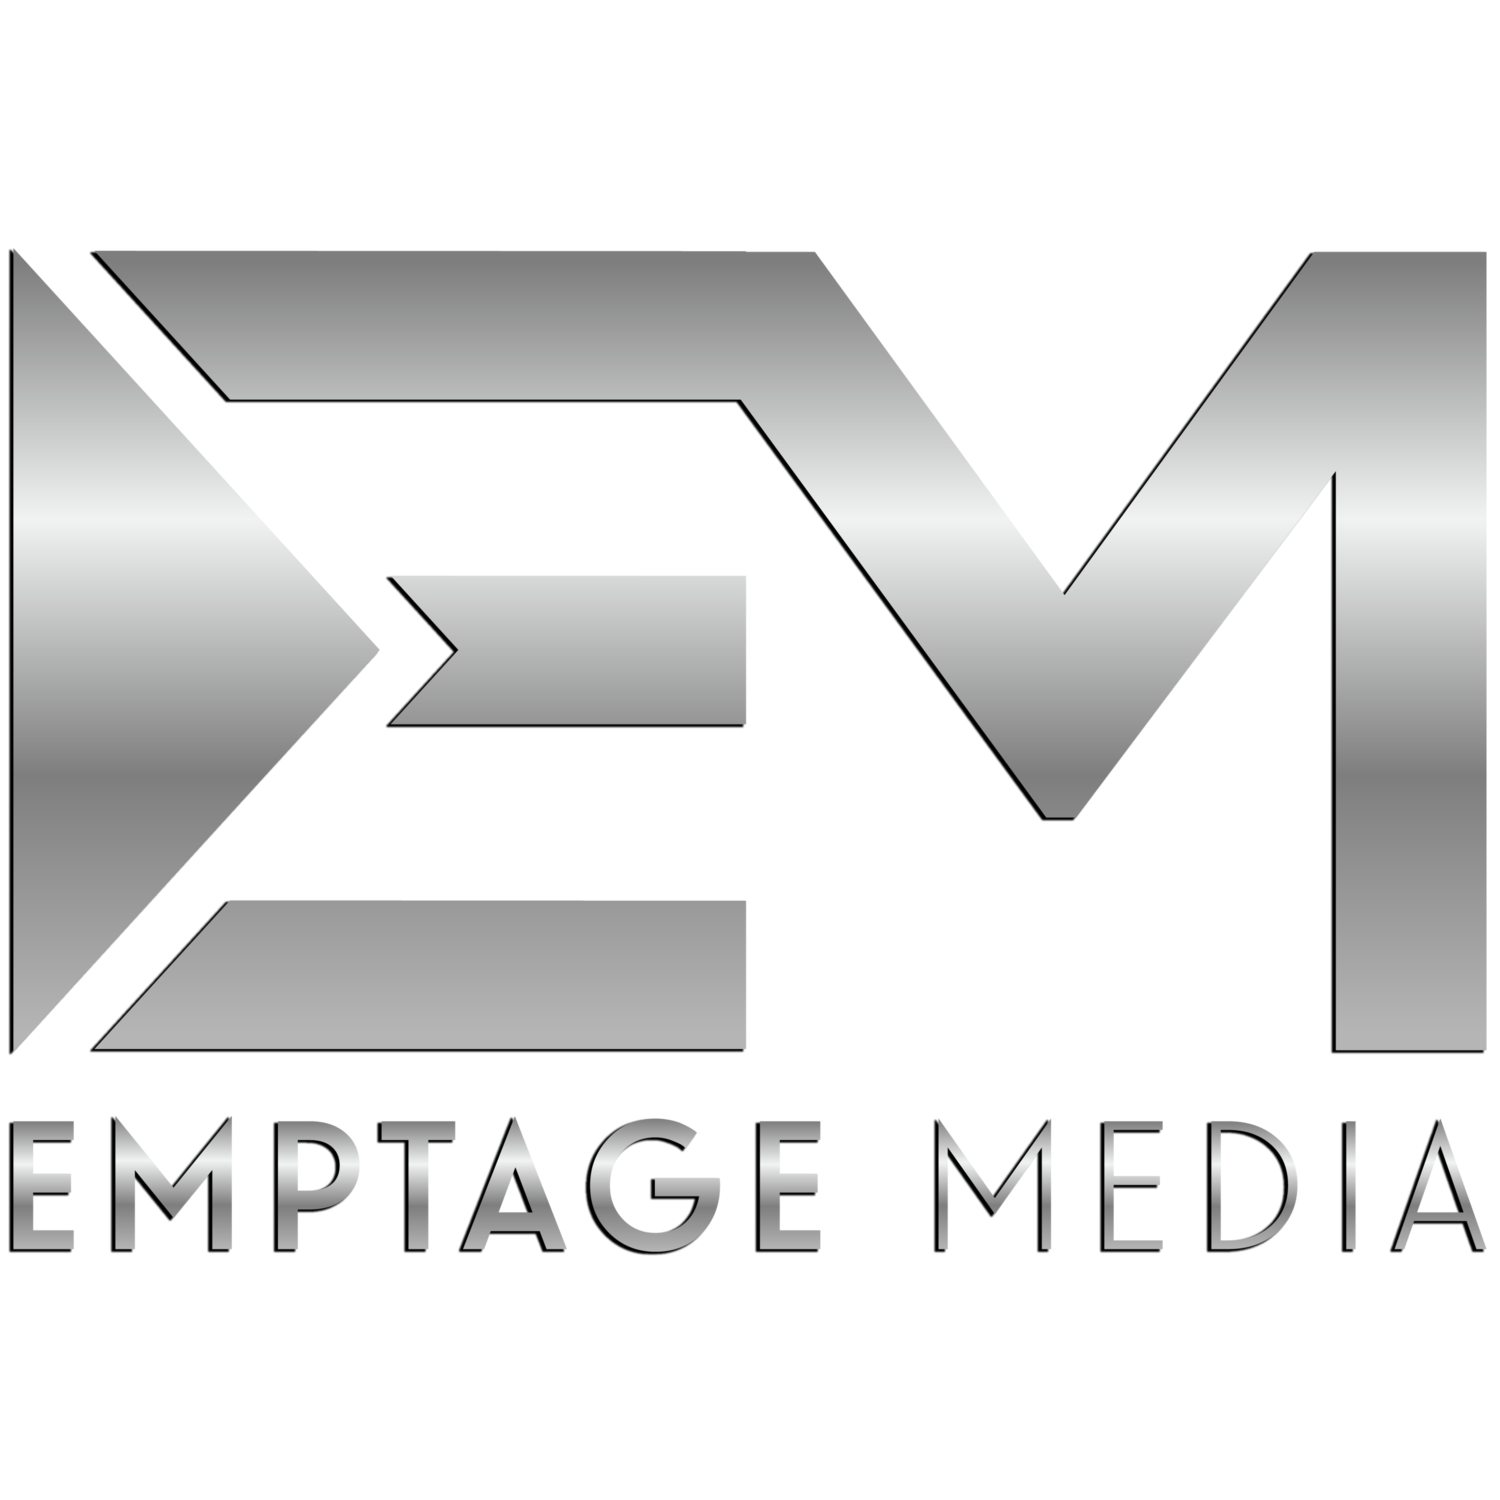 Emptage Media